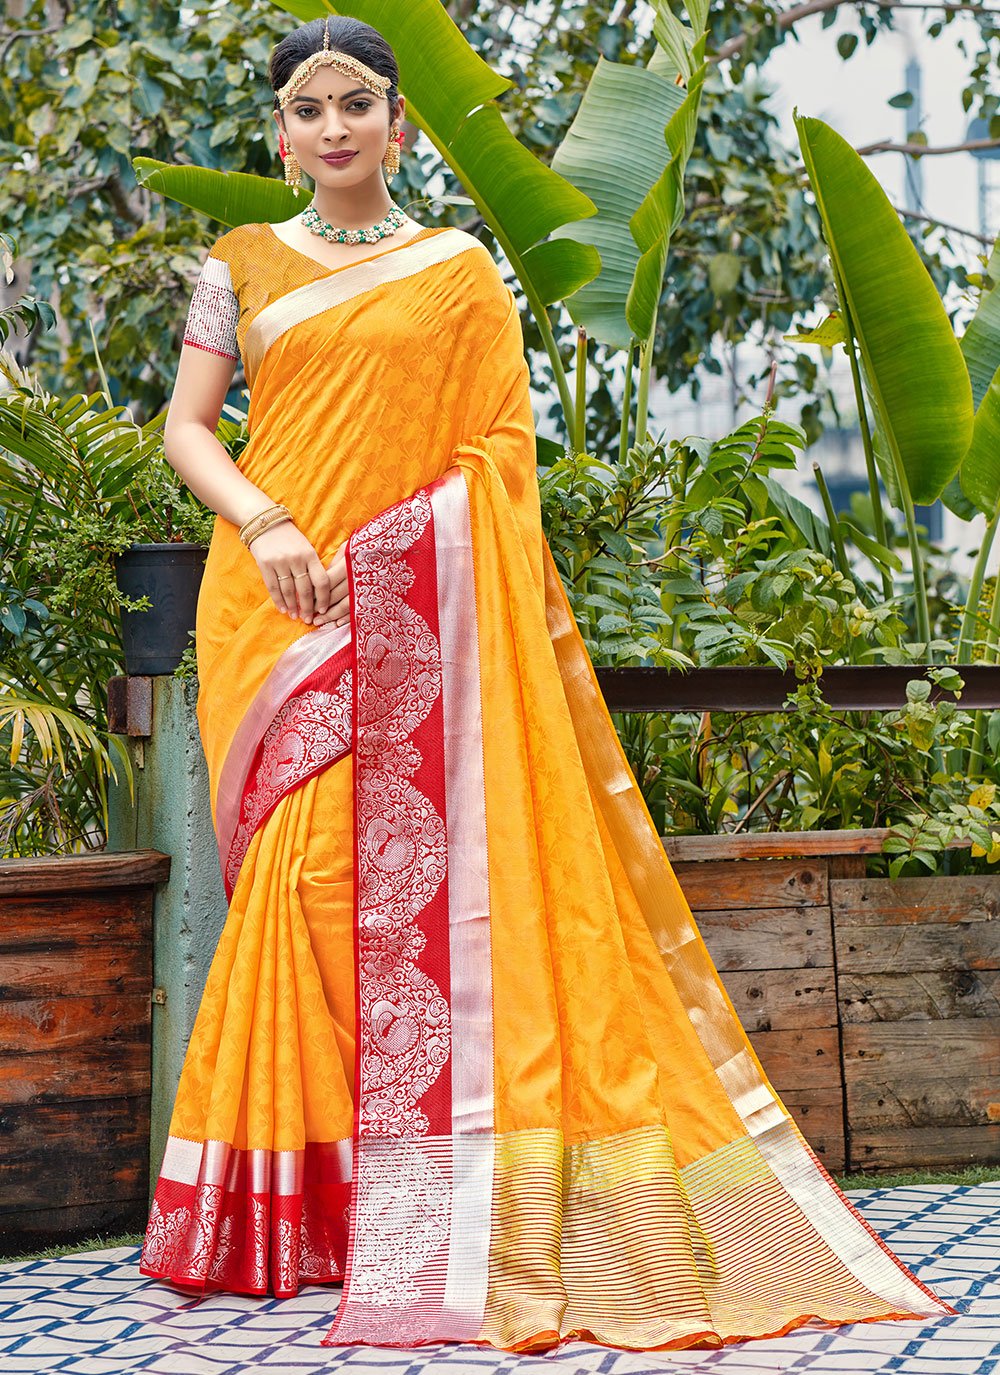 Banarasi Silk Yellow Designer Traditional Saree